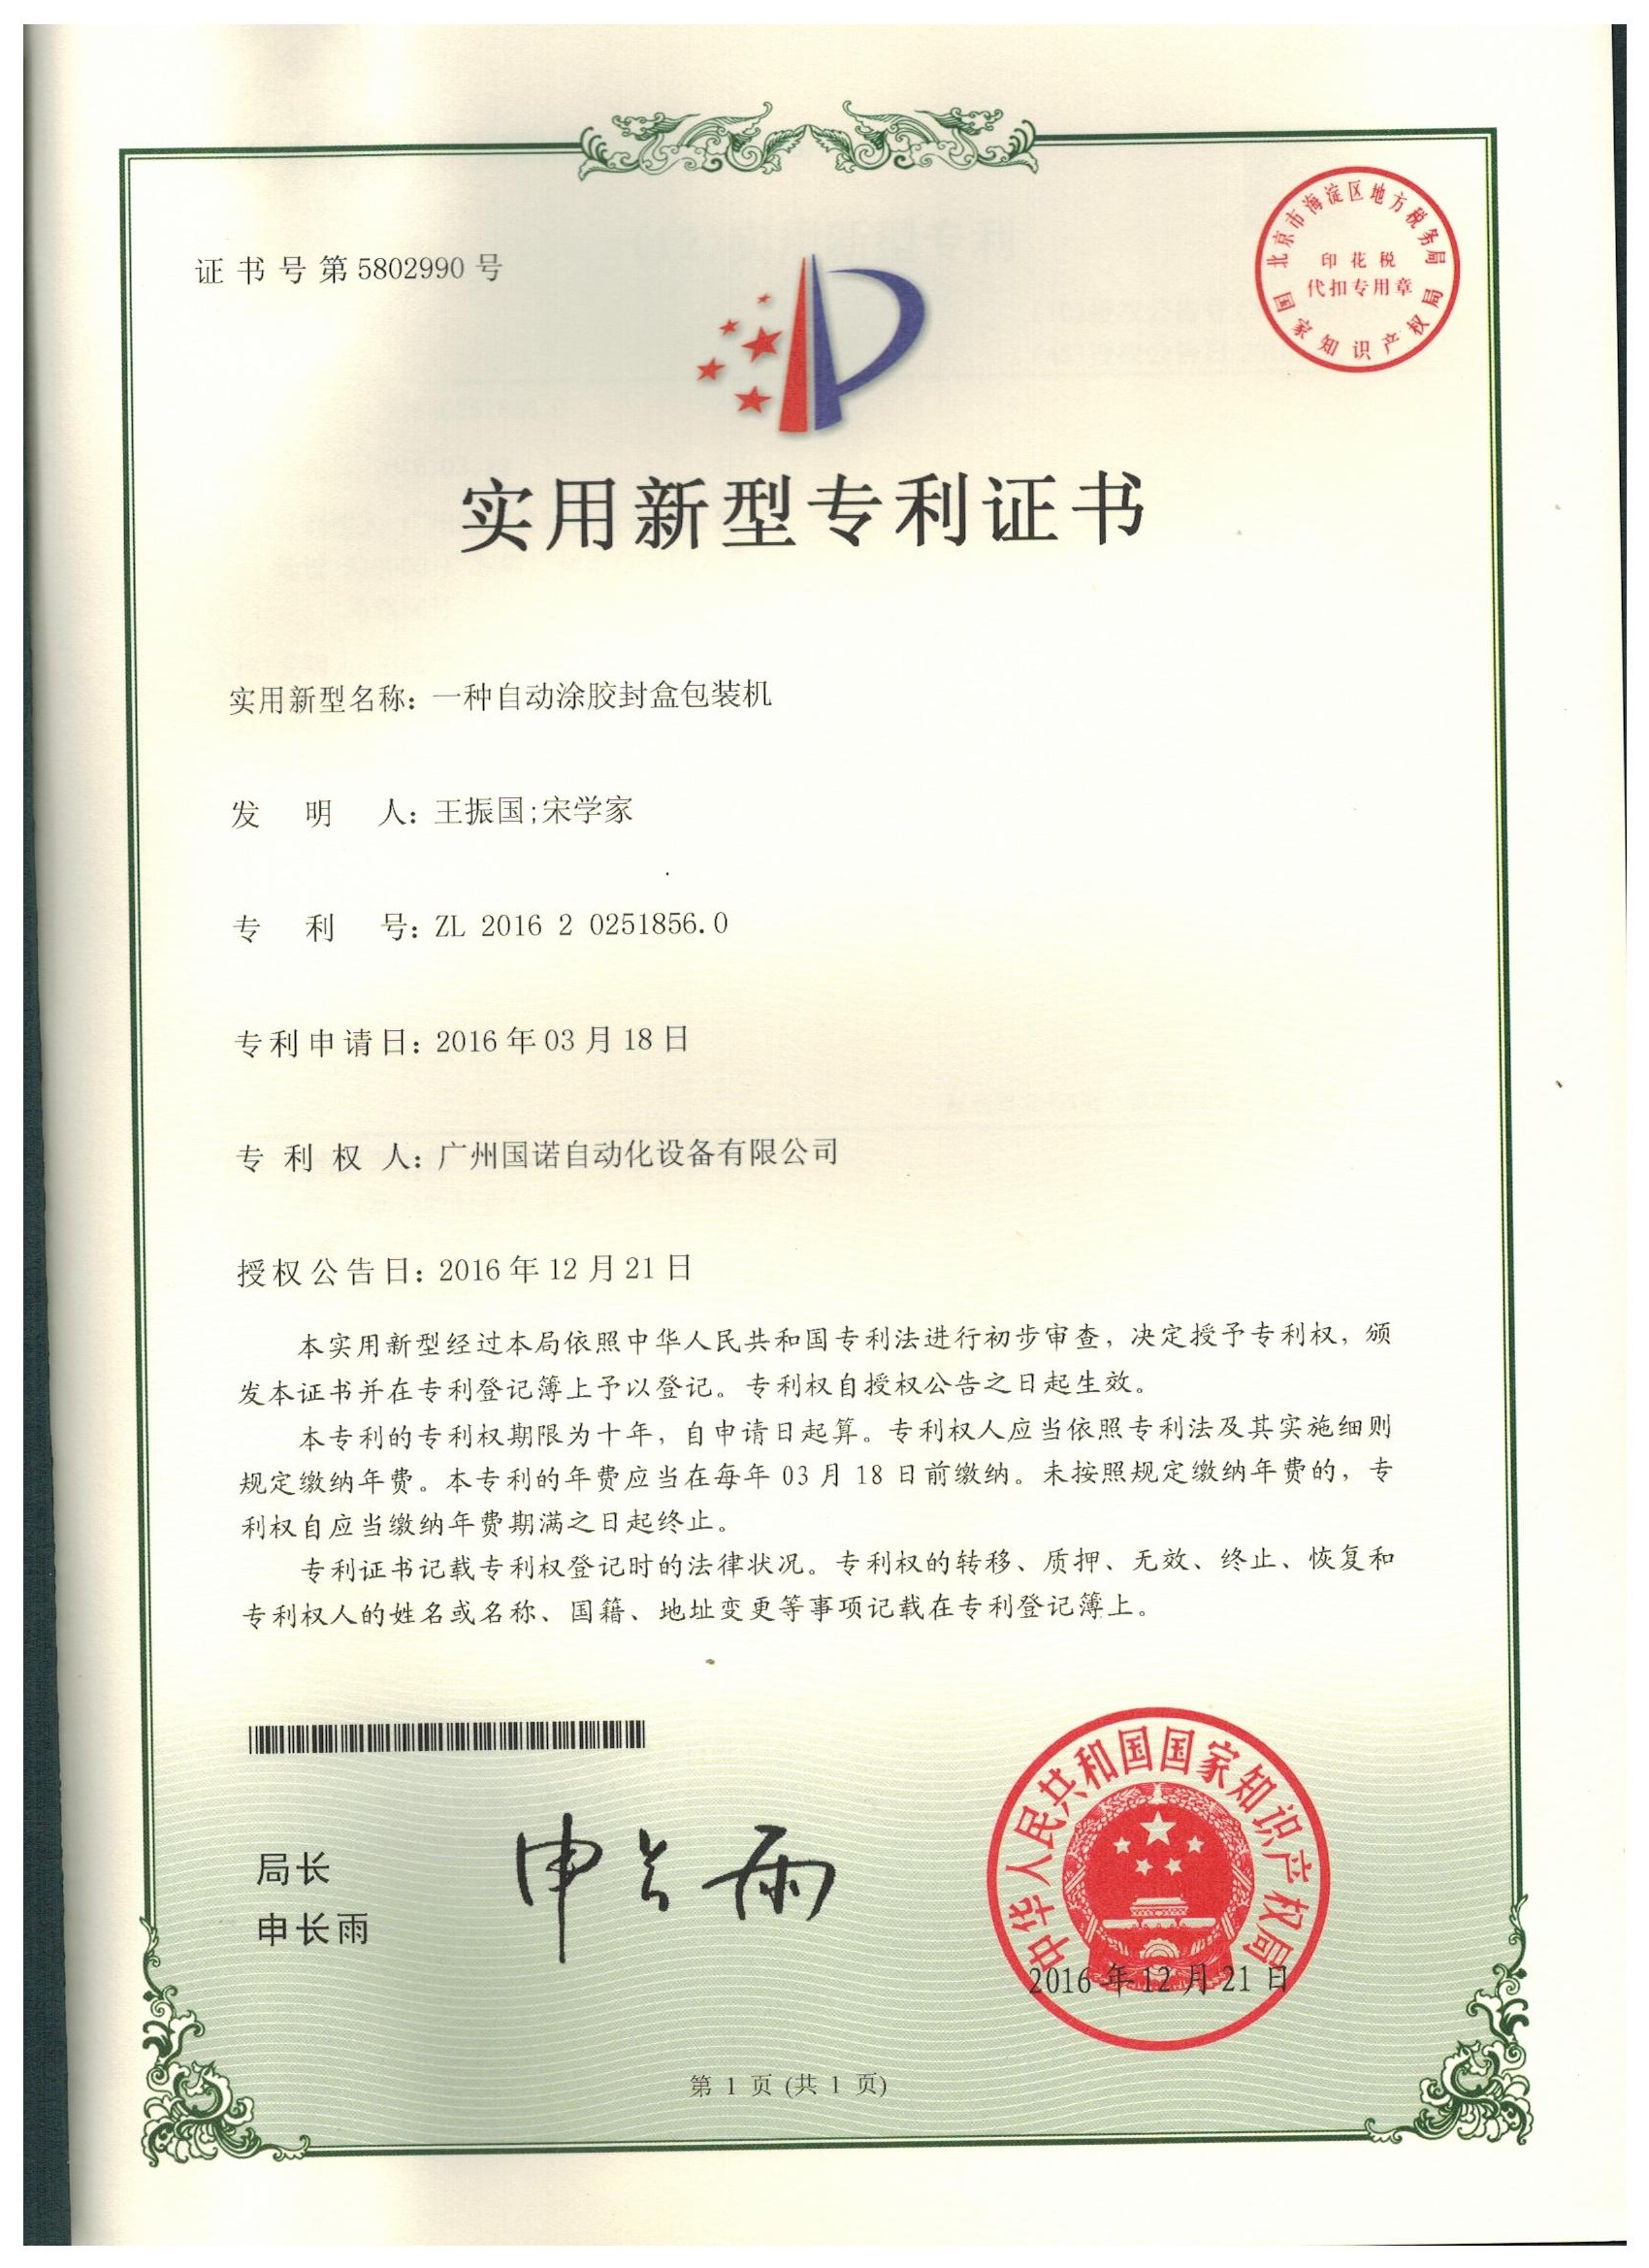 Sleever Packaging Certificate